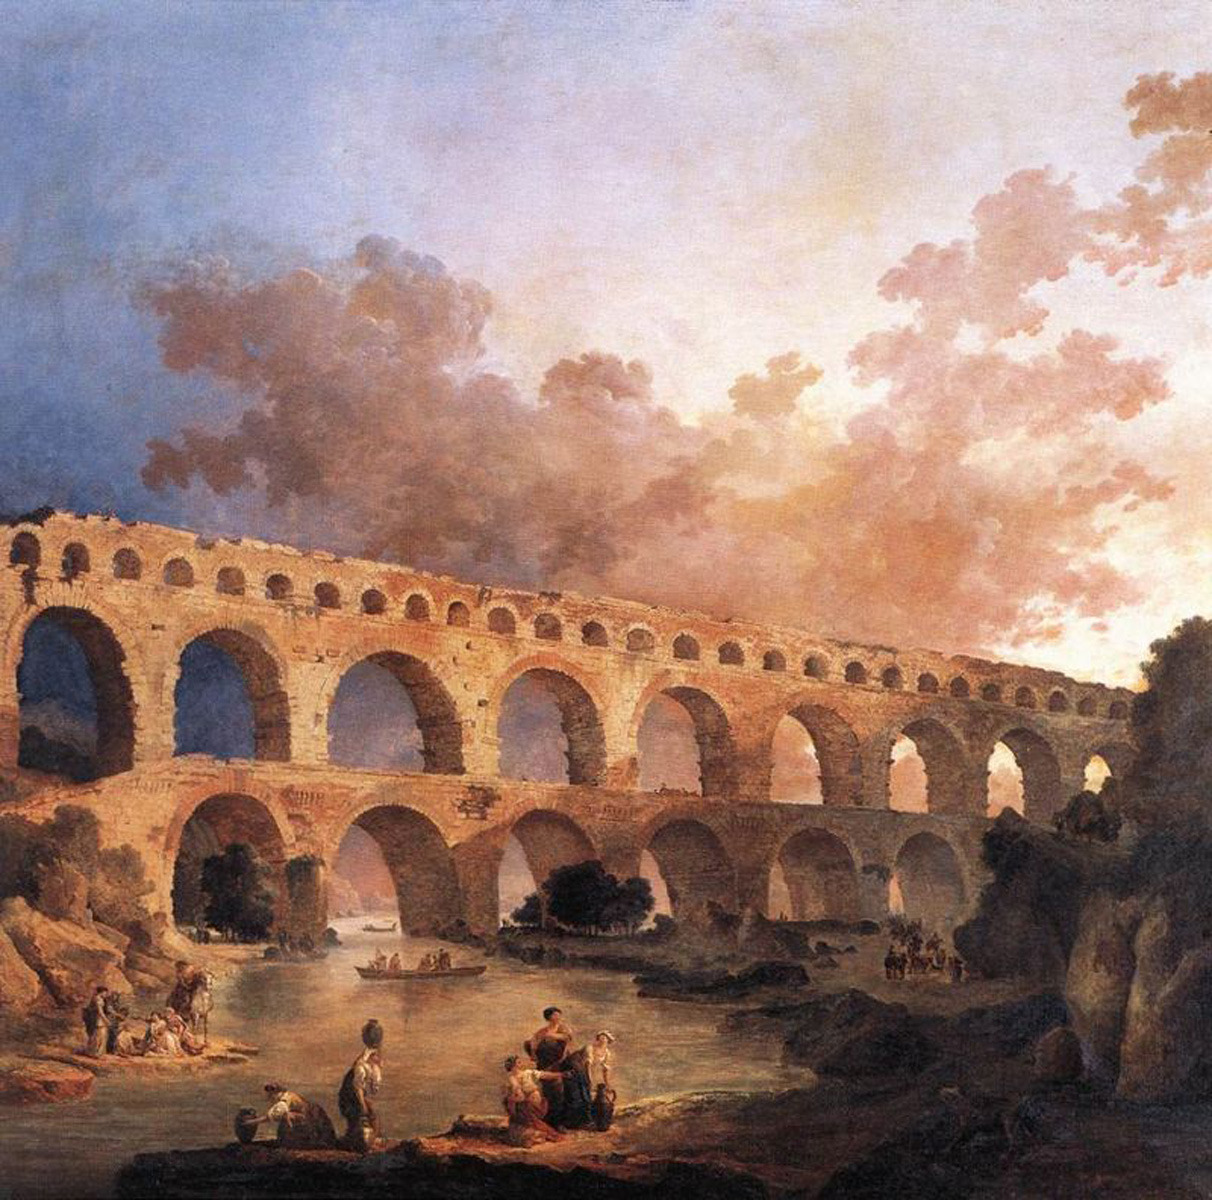 Pont du Gard 的罗马渡槽，现已被联合国教科文组织列为世界遗产。 休伯特·罗伯特 1787 年的画作。